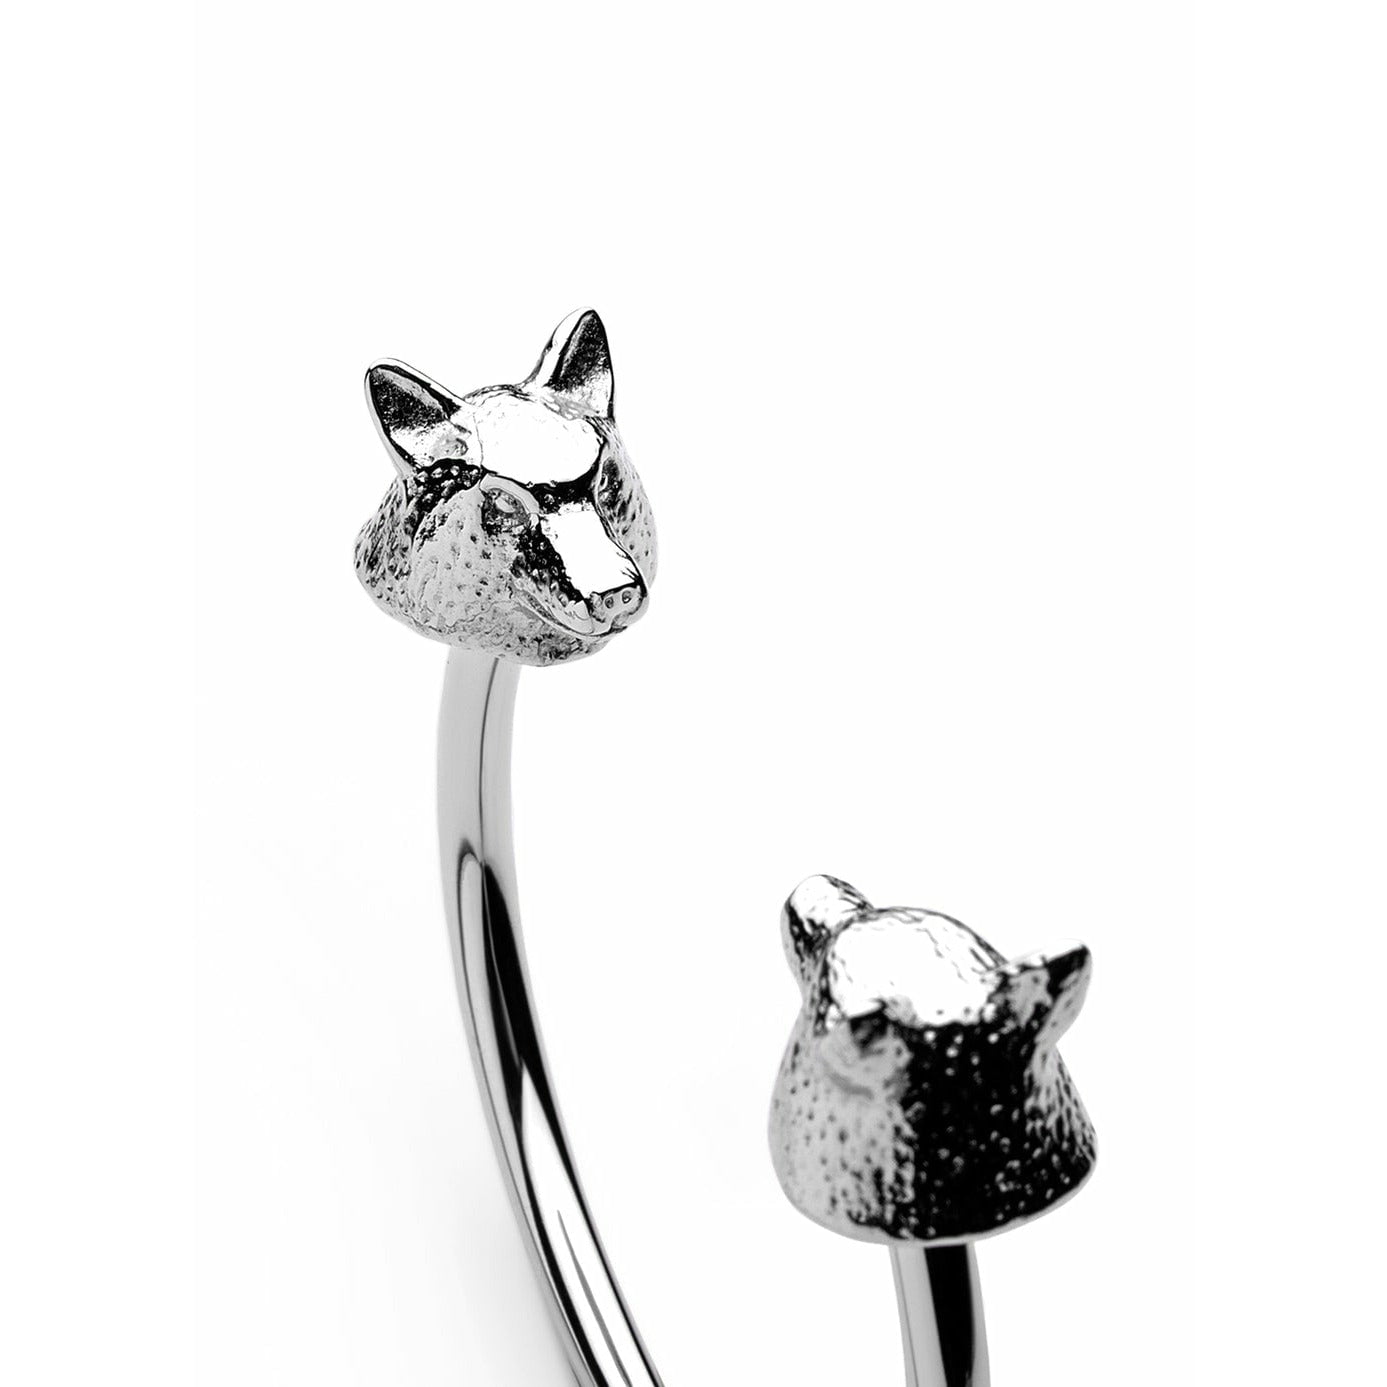 Skultuna Il braccialetto di lupo selvatico della fauna selvatica Nordica acciaio lucido, Ø18,5 cm